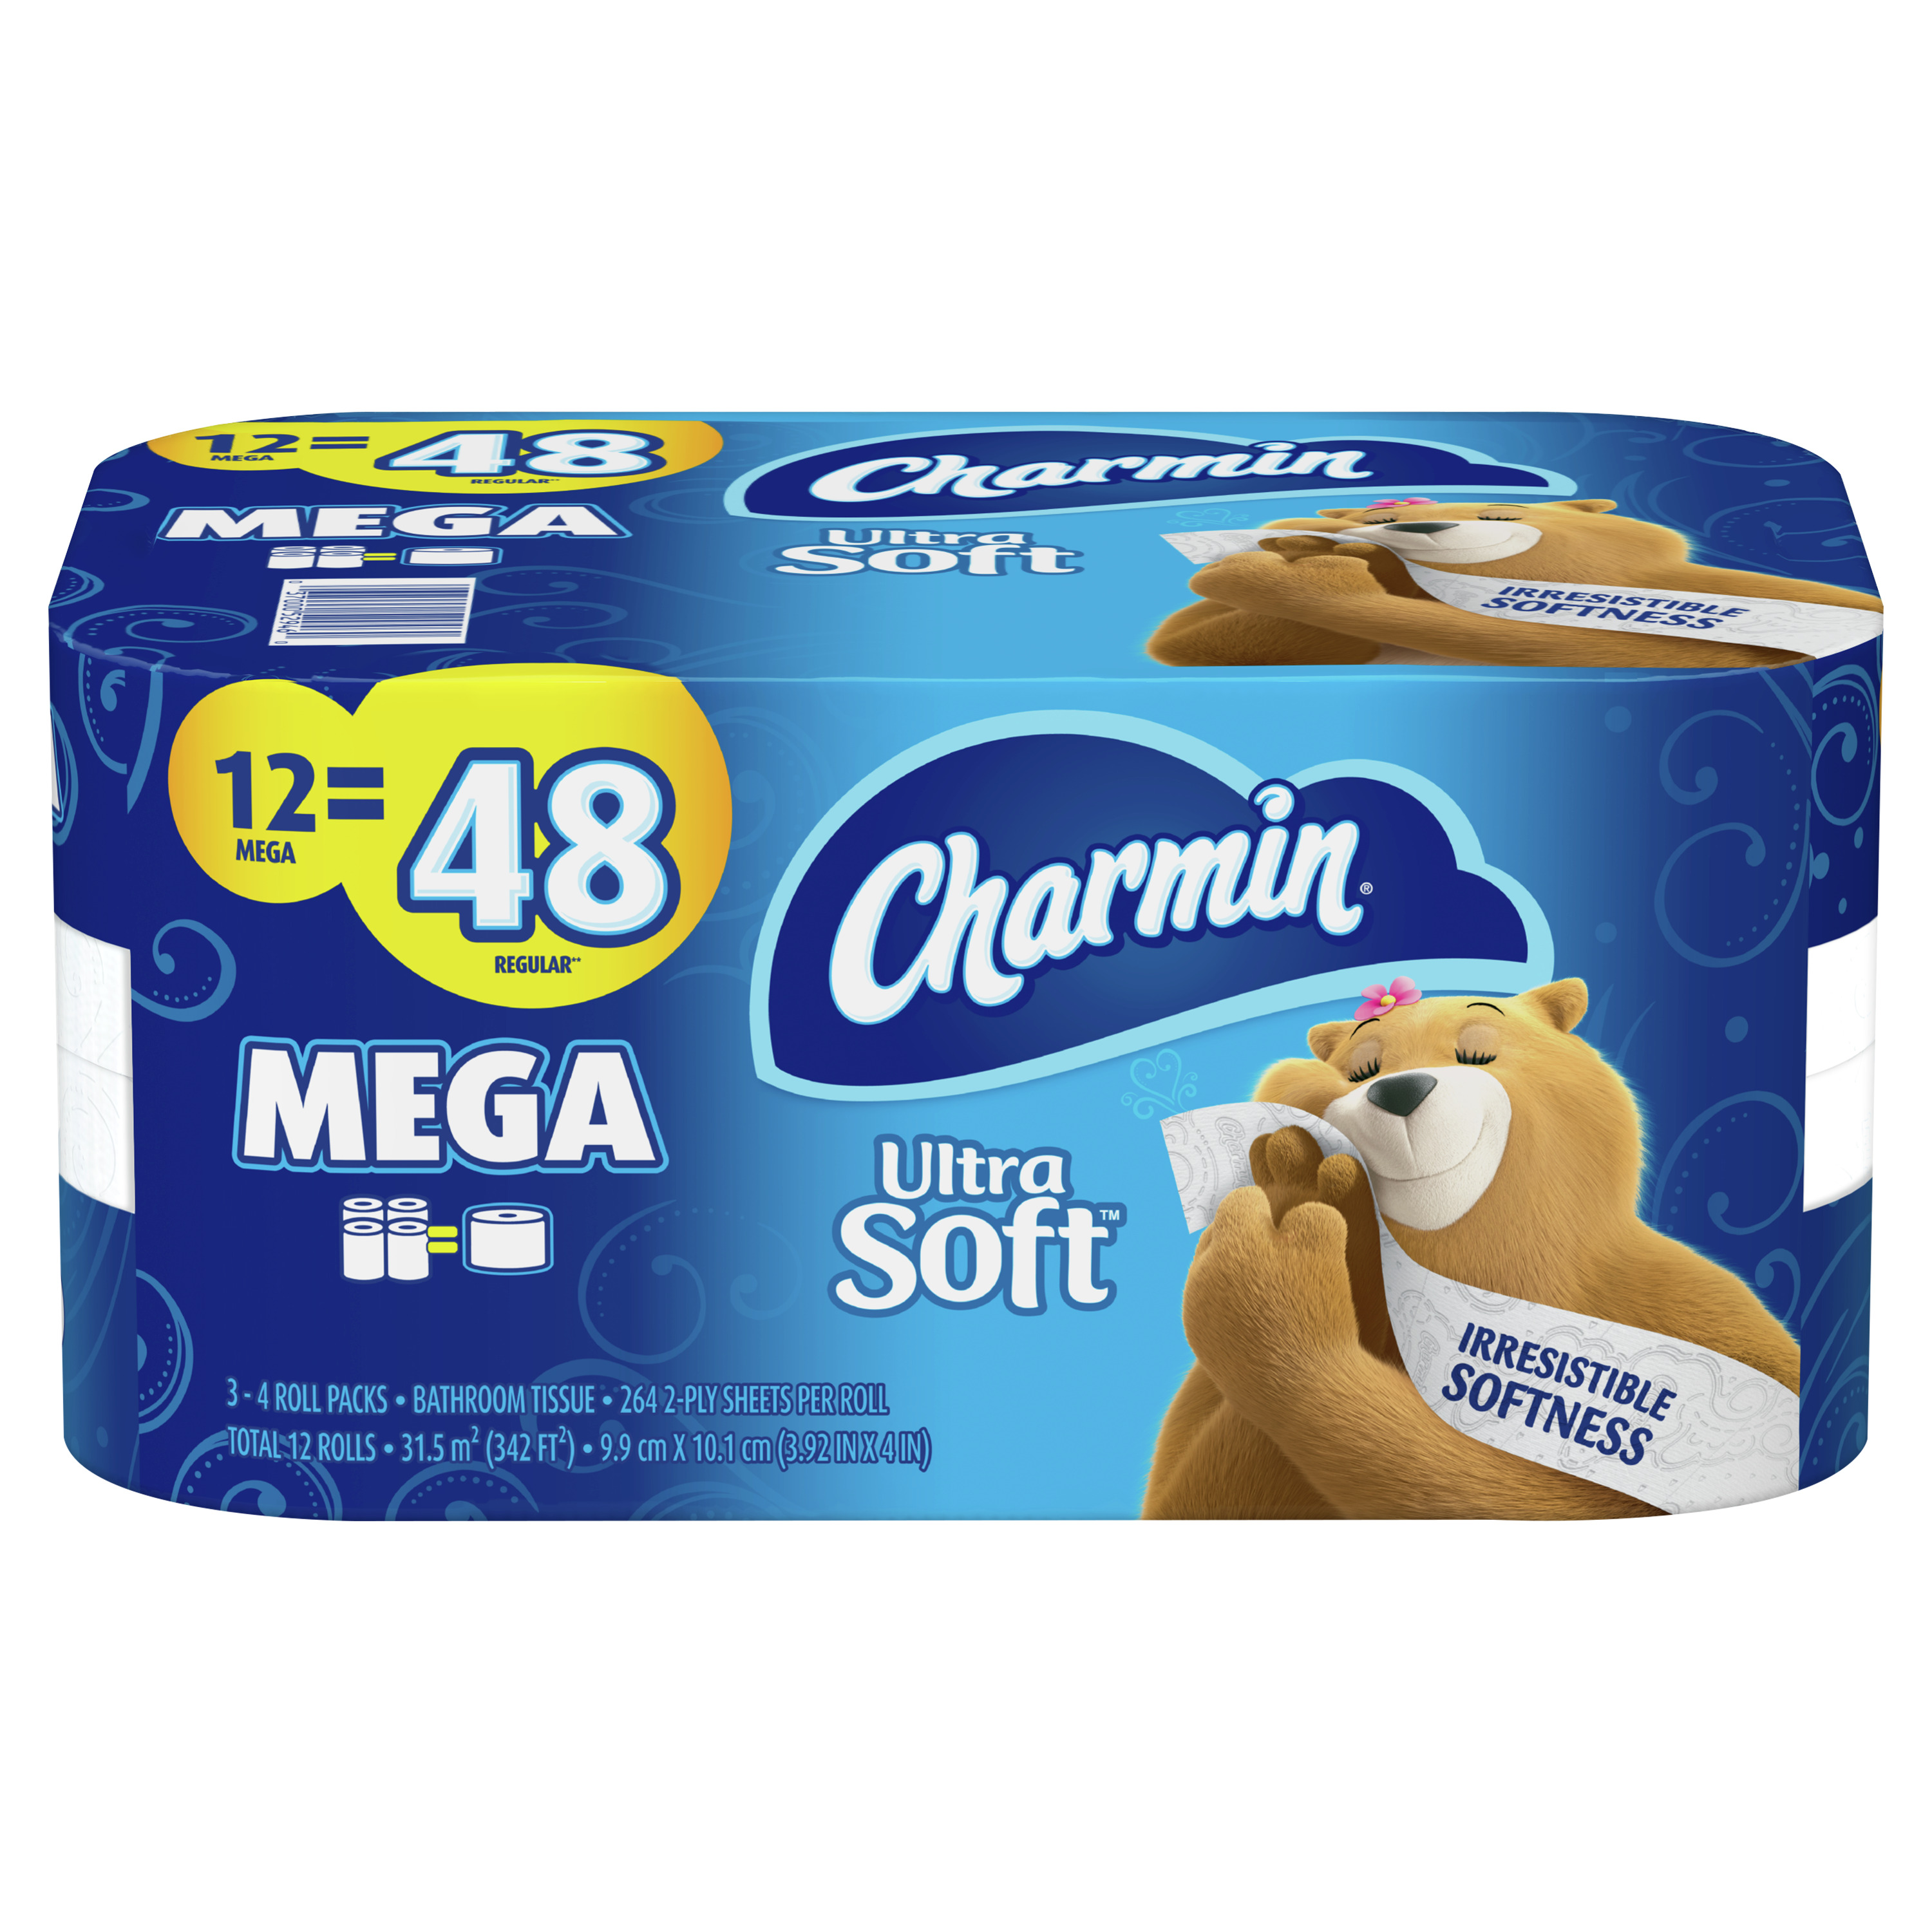 Charmin Ultra Soft Toilet Paper, 12 Mega Rolls - Walmart.com